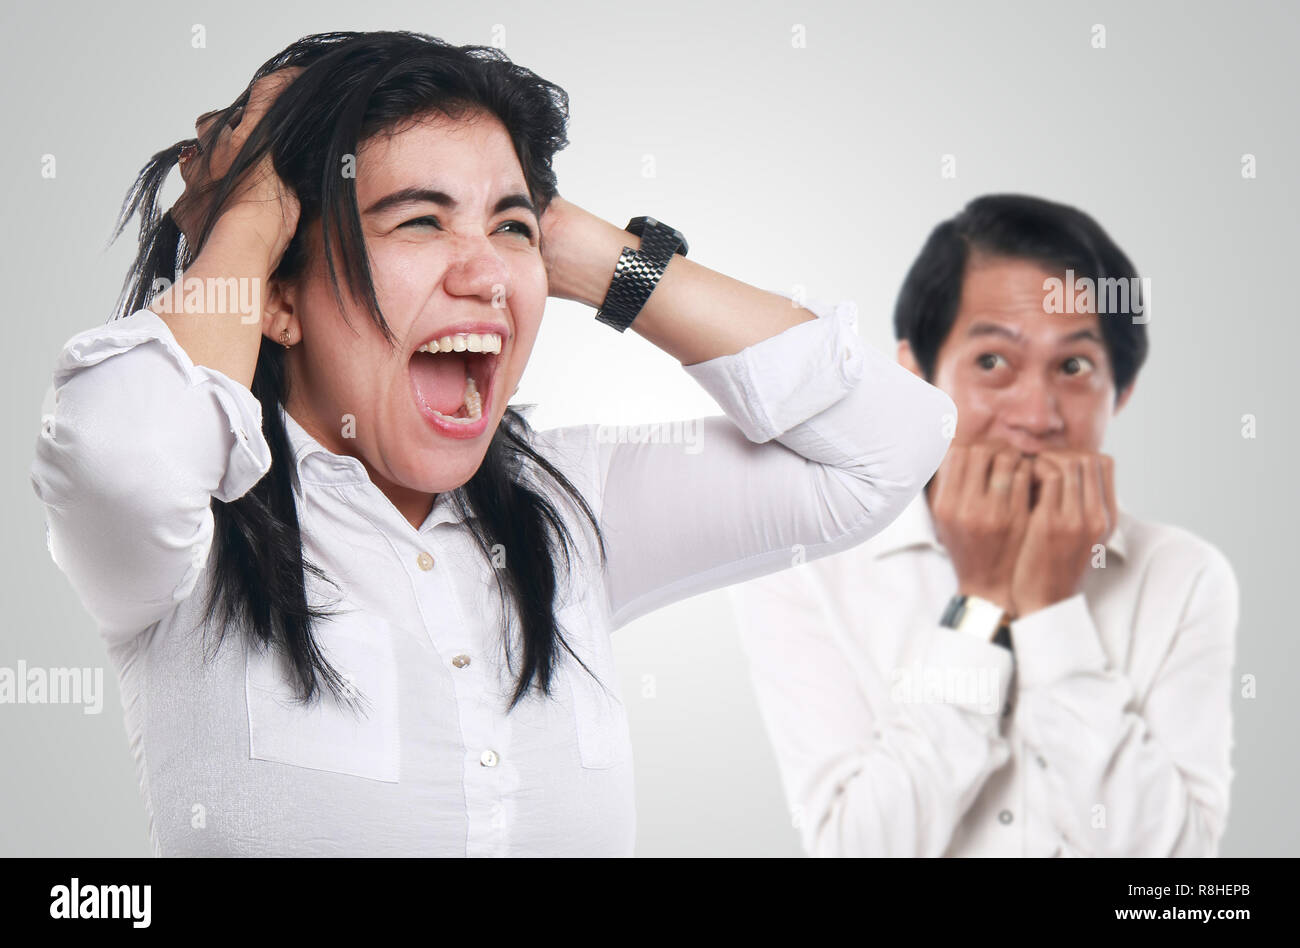 Foto Bild eines Verrückten asiatischen Geschäftsfrau schreien während einem erschrockenen Mann im Hintergrund Besorgt sah, Verrücktes Paar Konzept Stockfoto